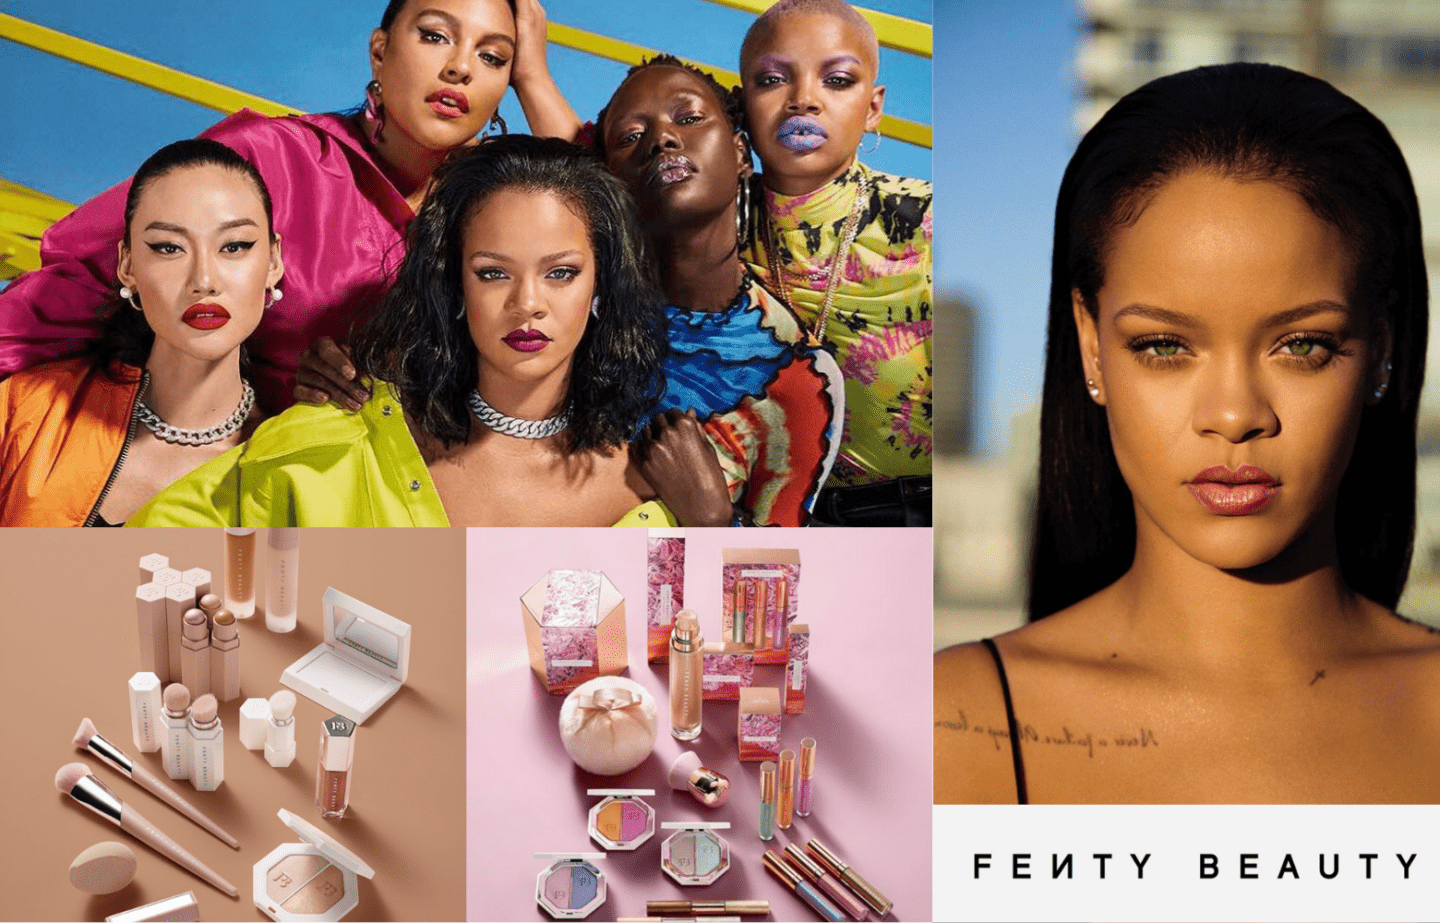 Fenty Beauty — Rihanna